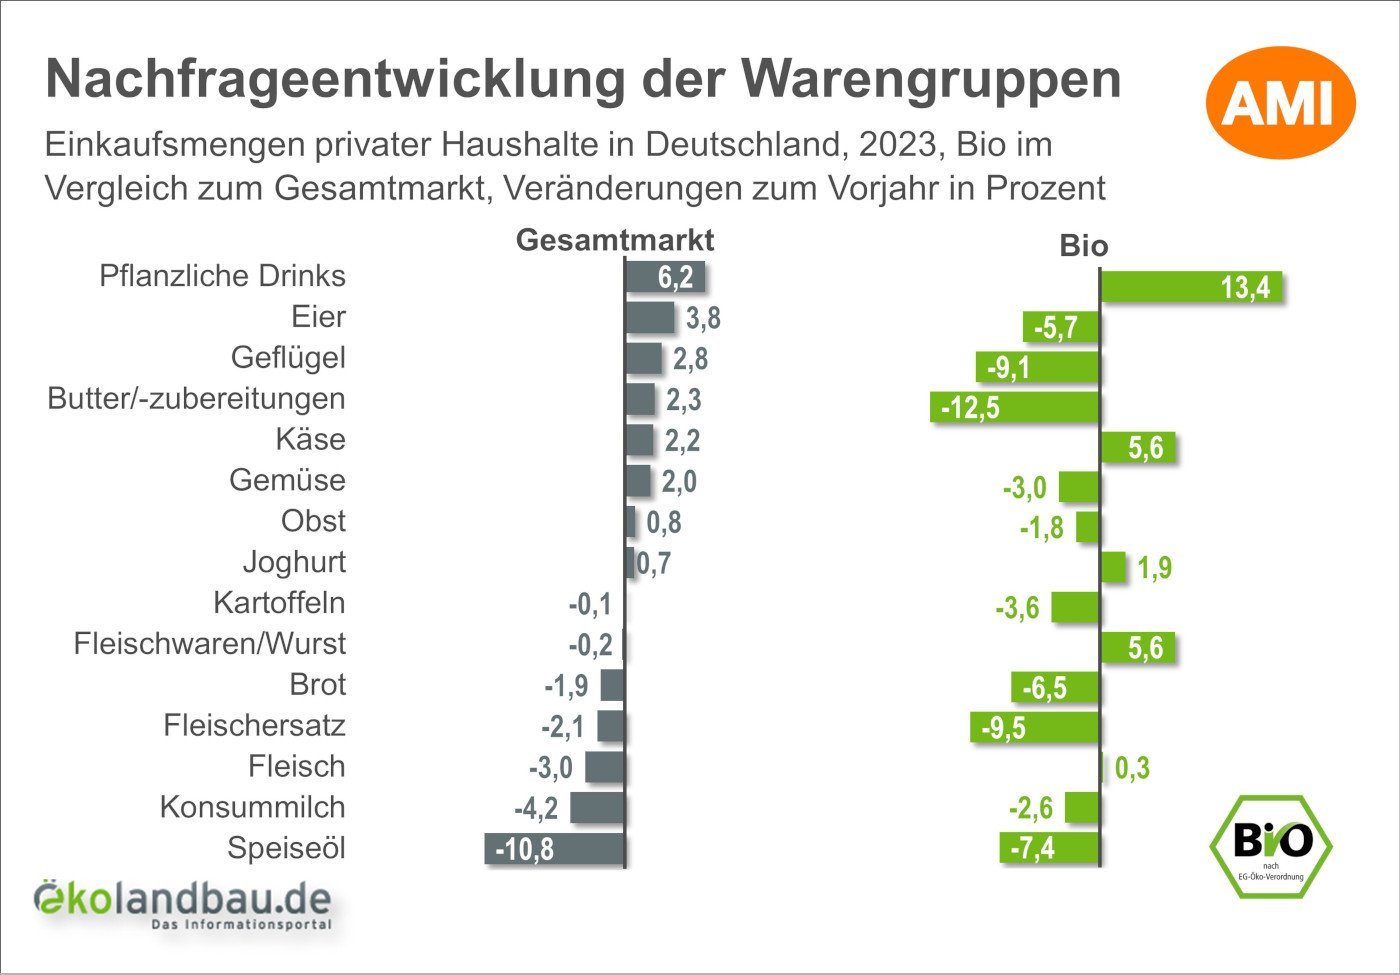 Einkaufsmengen privater Haushalte in Deutschland nach Warengruppen im Jahr 2023, Bio im Vergleich zum Gesamtmarkt, Veränderungsrate in Prozent